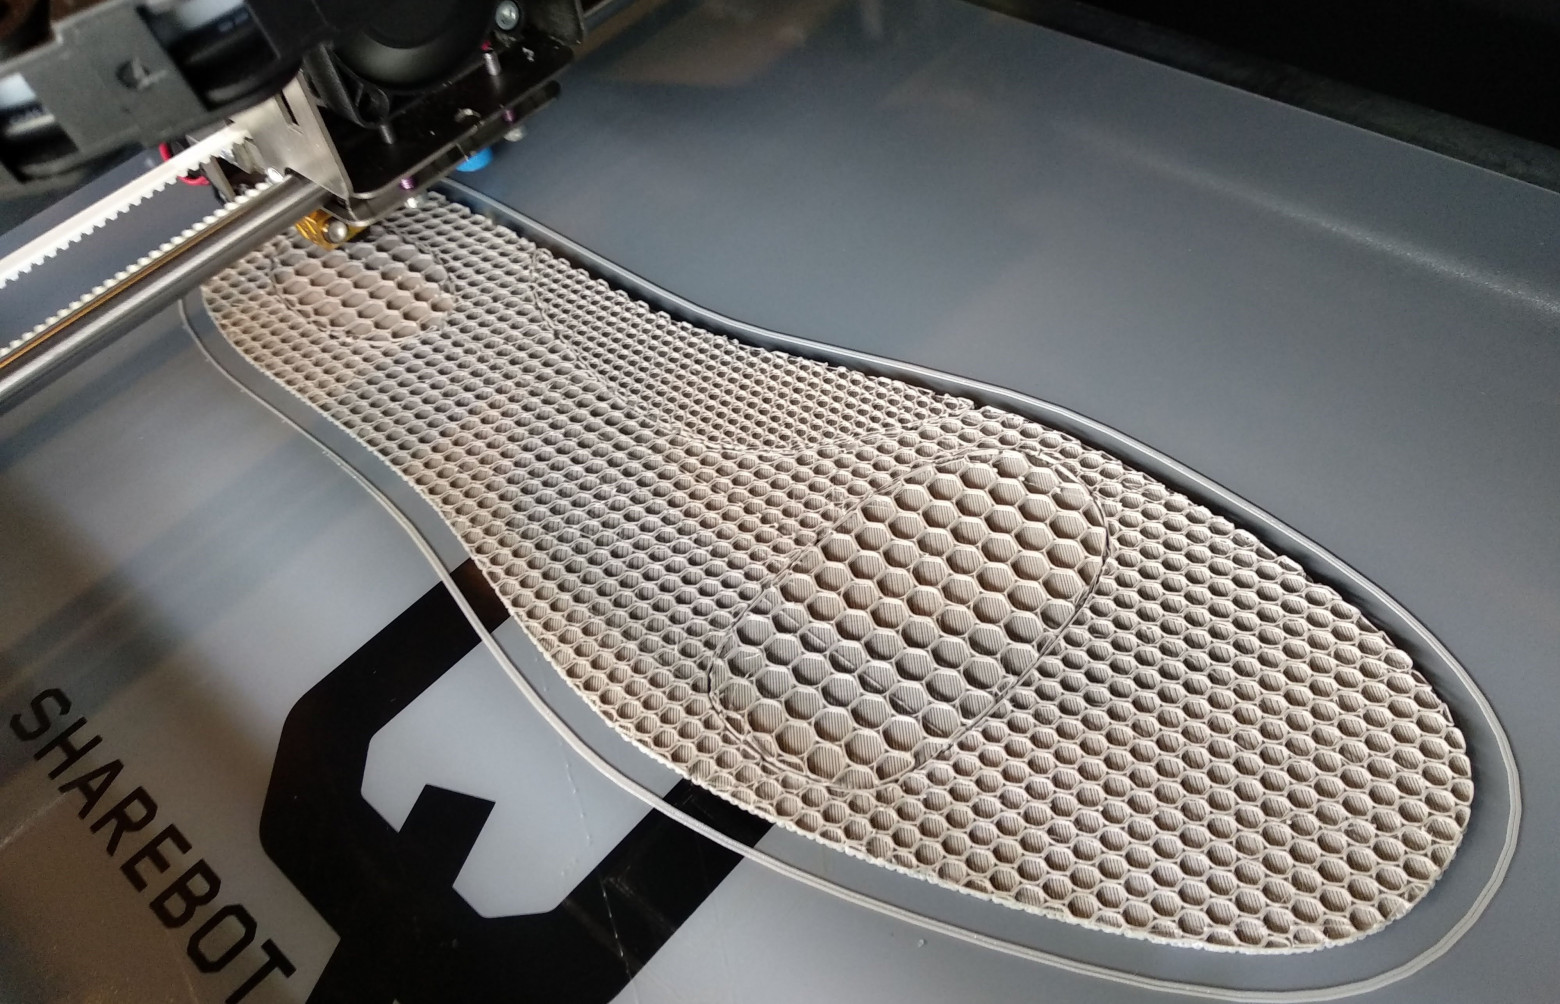 Создание кастомизированных стелек с помощью 3D-принтера Sharebot Q, который помог достичь великолепных результатов со сложными в использовании гибкими эластомерами